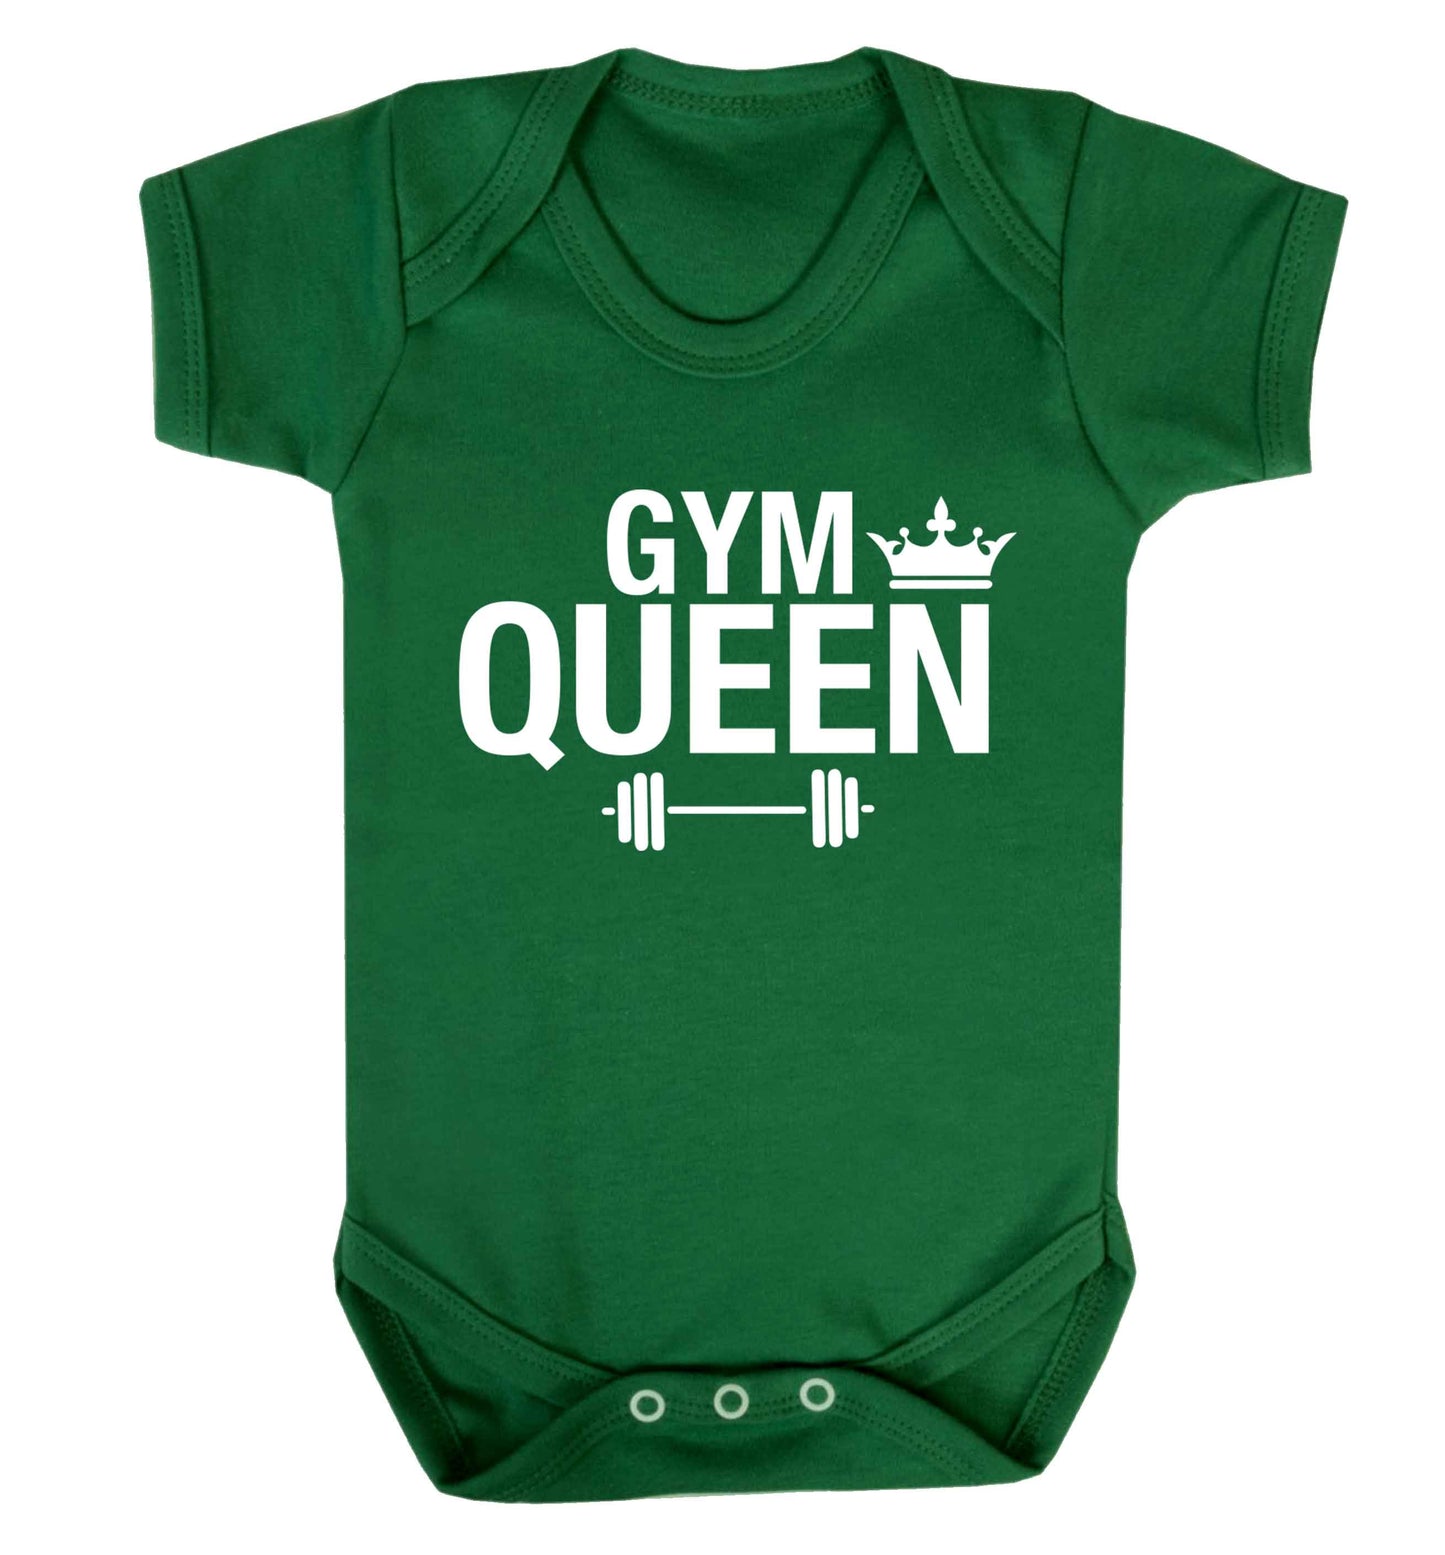 Gym queen Baby Vest green 18-24 months